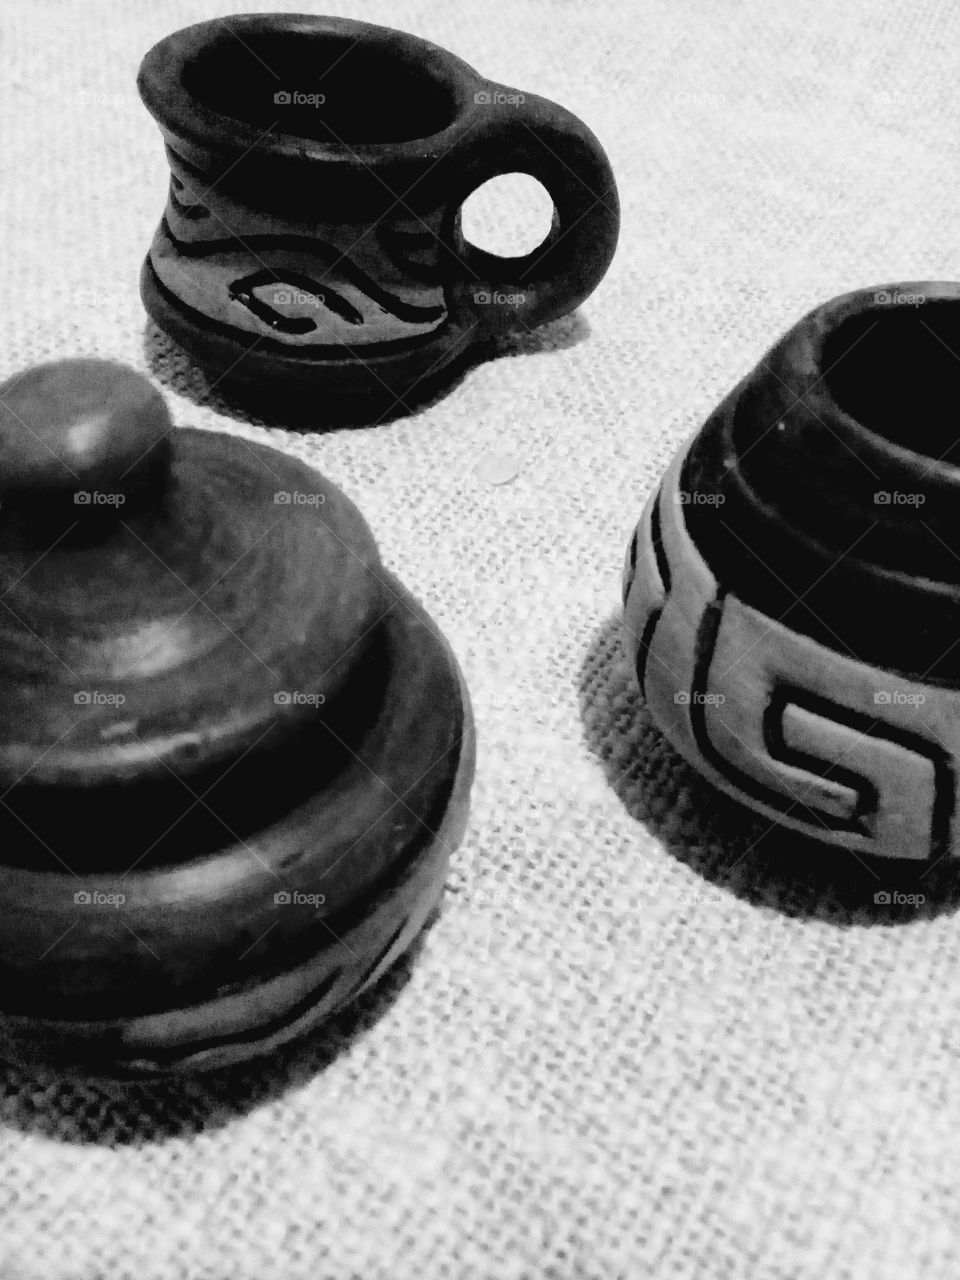 Clay pots. Brasil